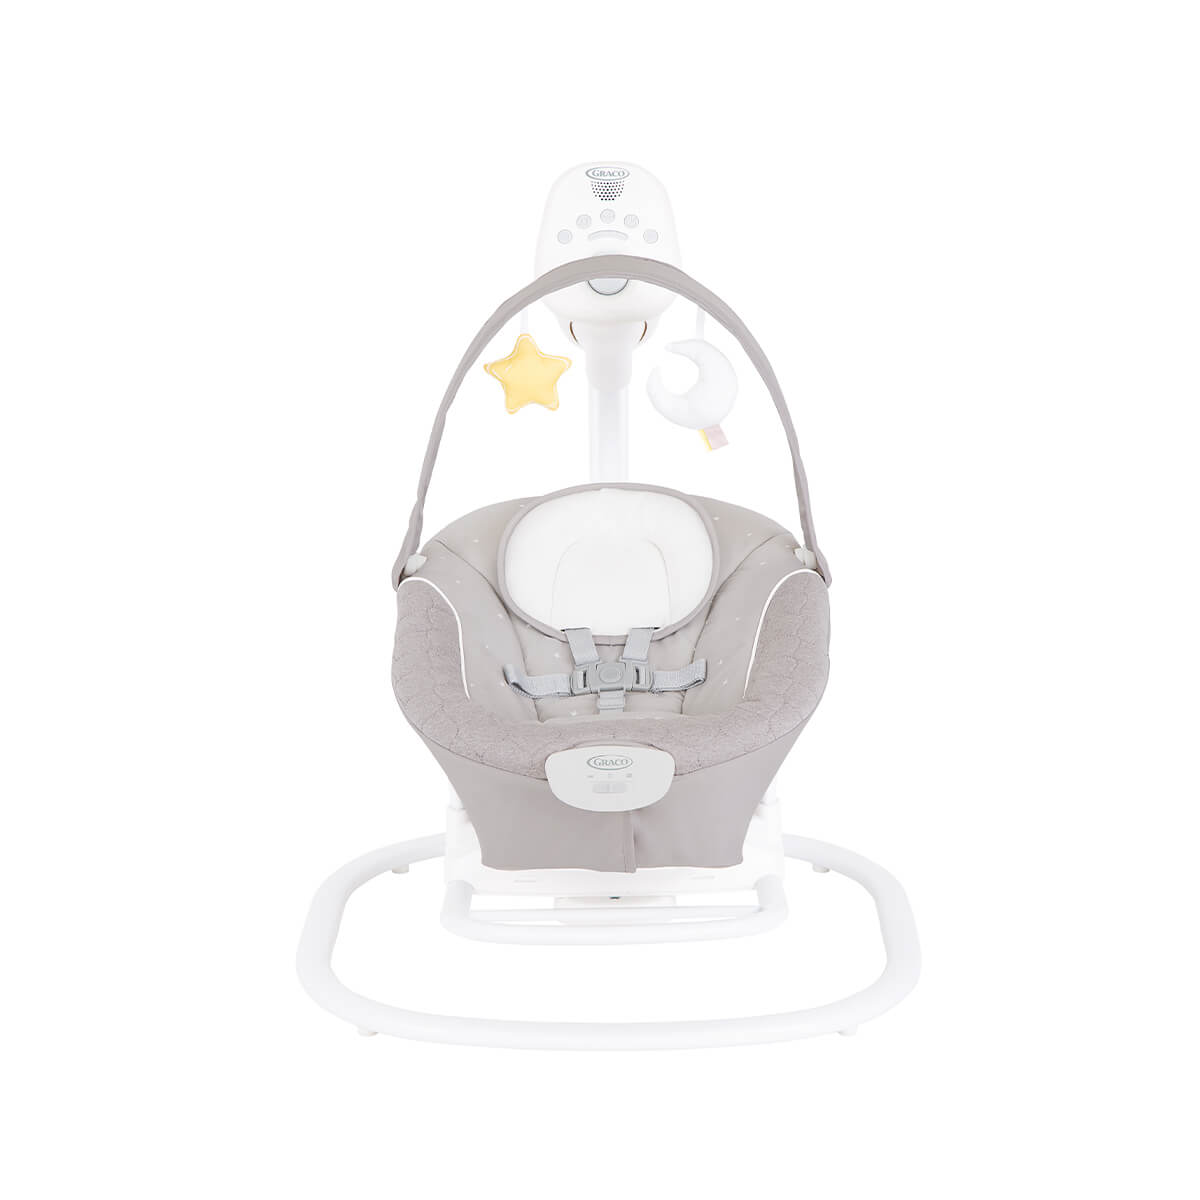 Frontansicht der leisen Babyschaukel Graco® SoftSway™ vor weißem Hintergrund
